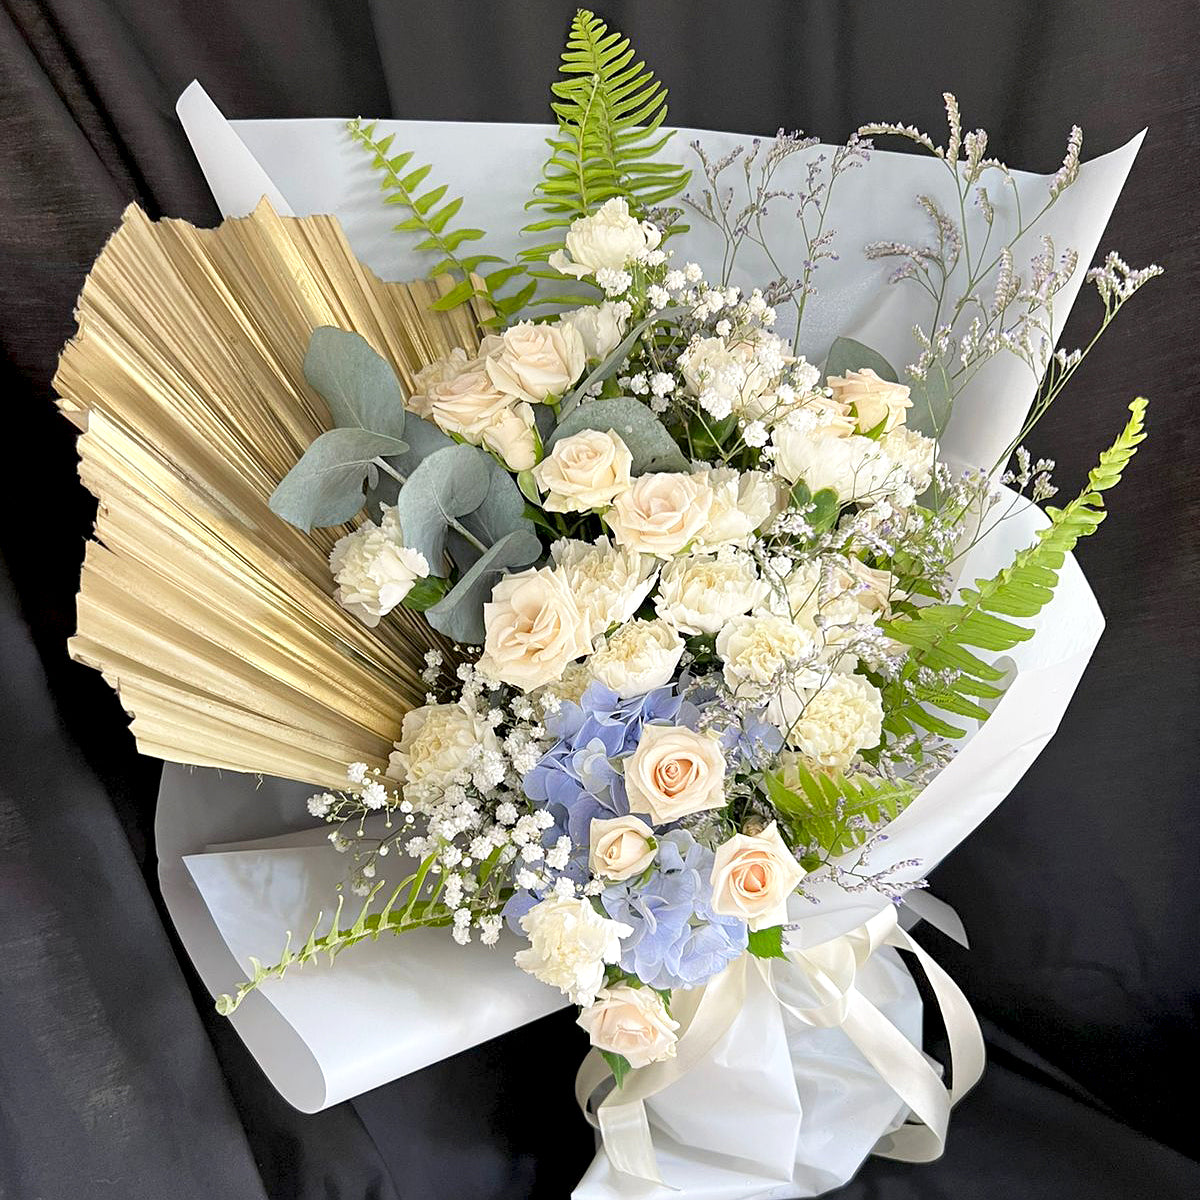 Sympathy-Funeral-Flower-Bouquet-Bliss-XLarge-wrap-DodoMarket-Mauritius